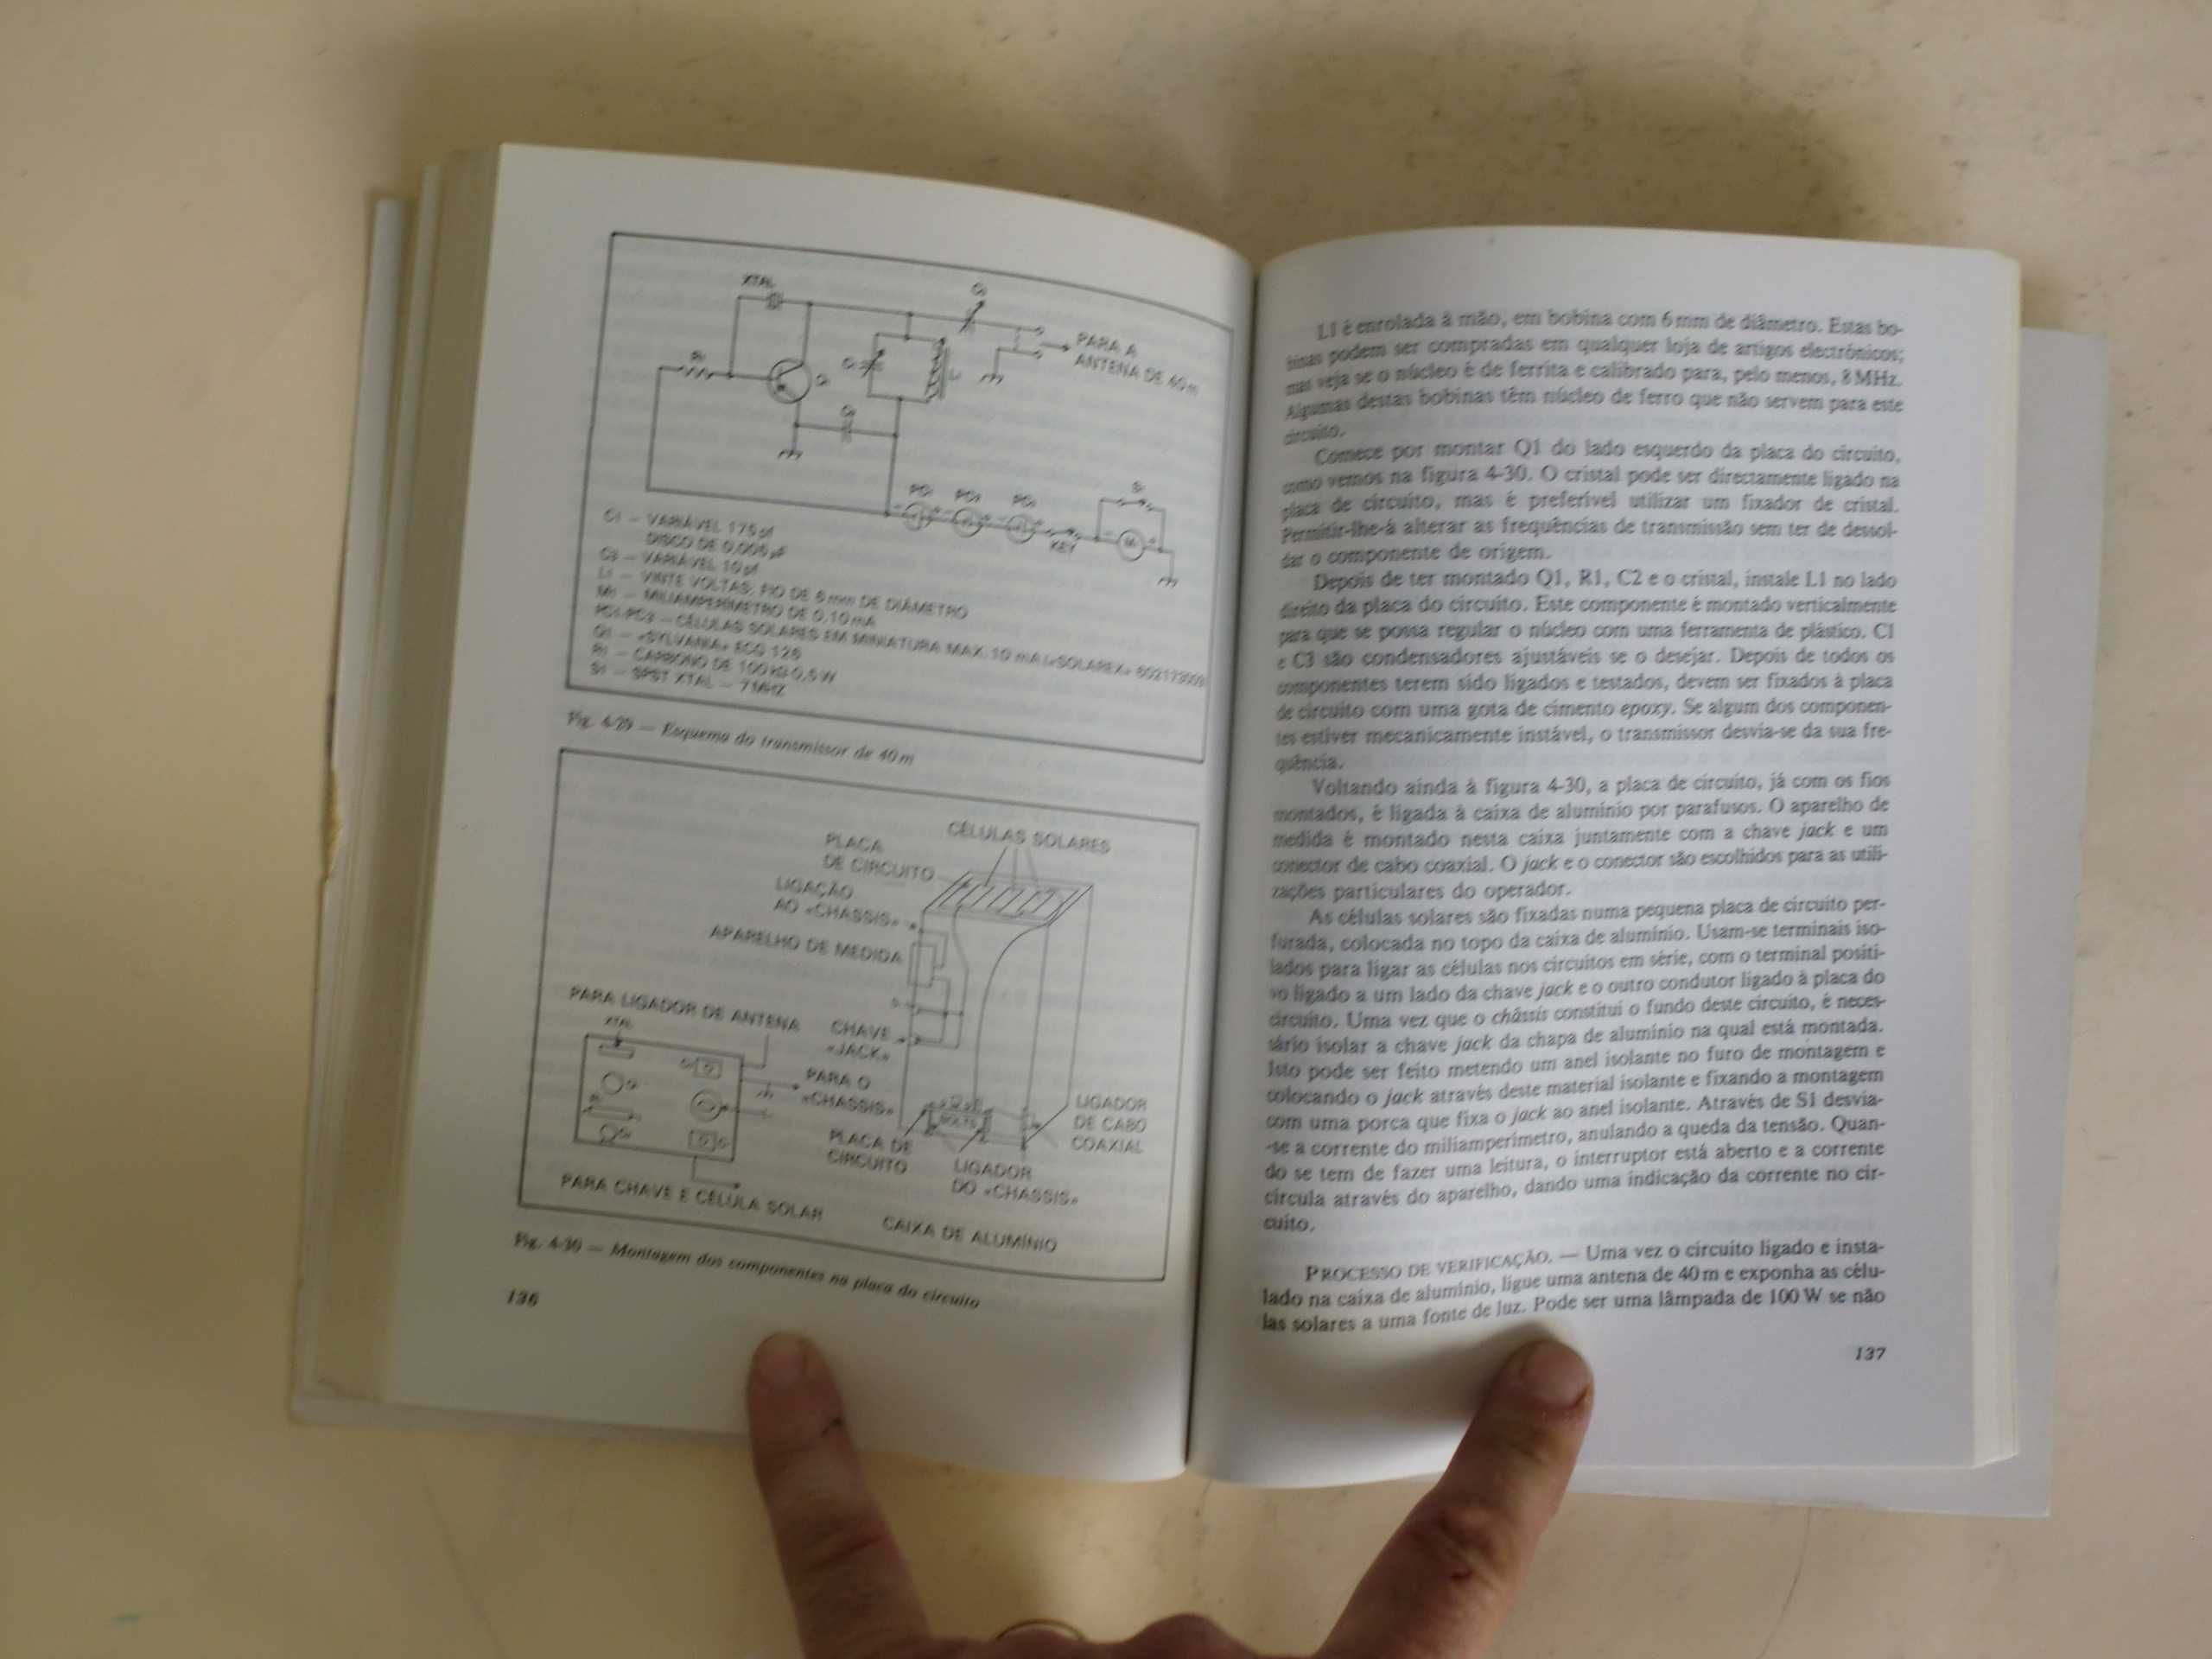 Manual de Utilização das Células Fotovoltaicas
de Isaac R. Holstroemn